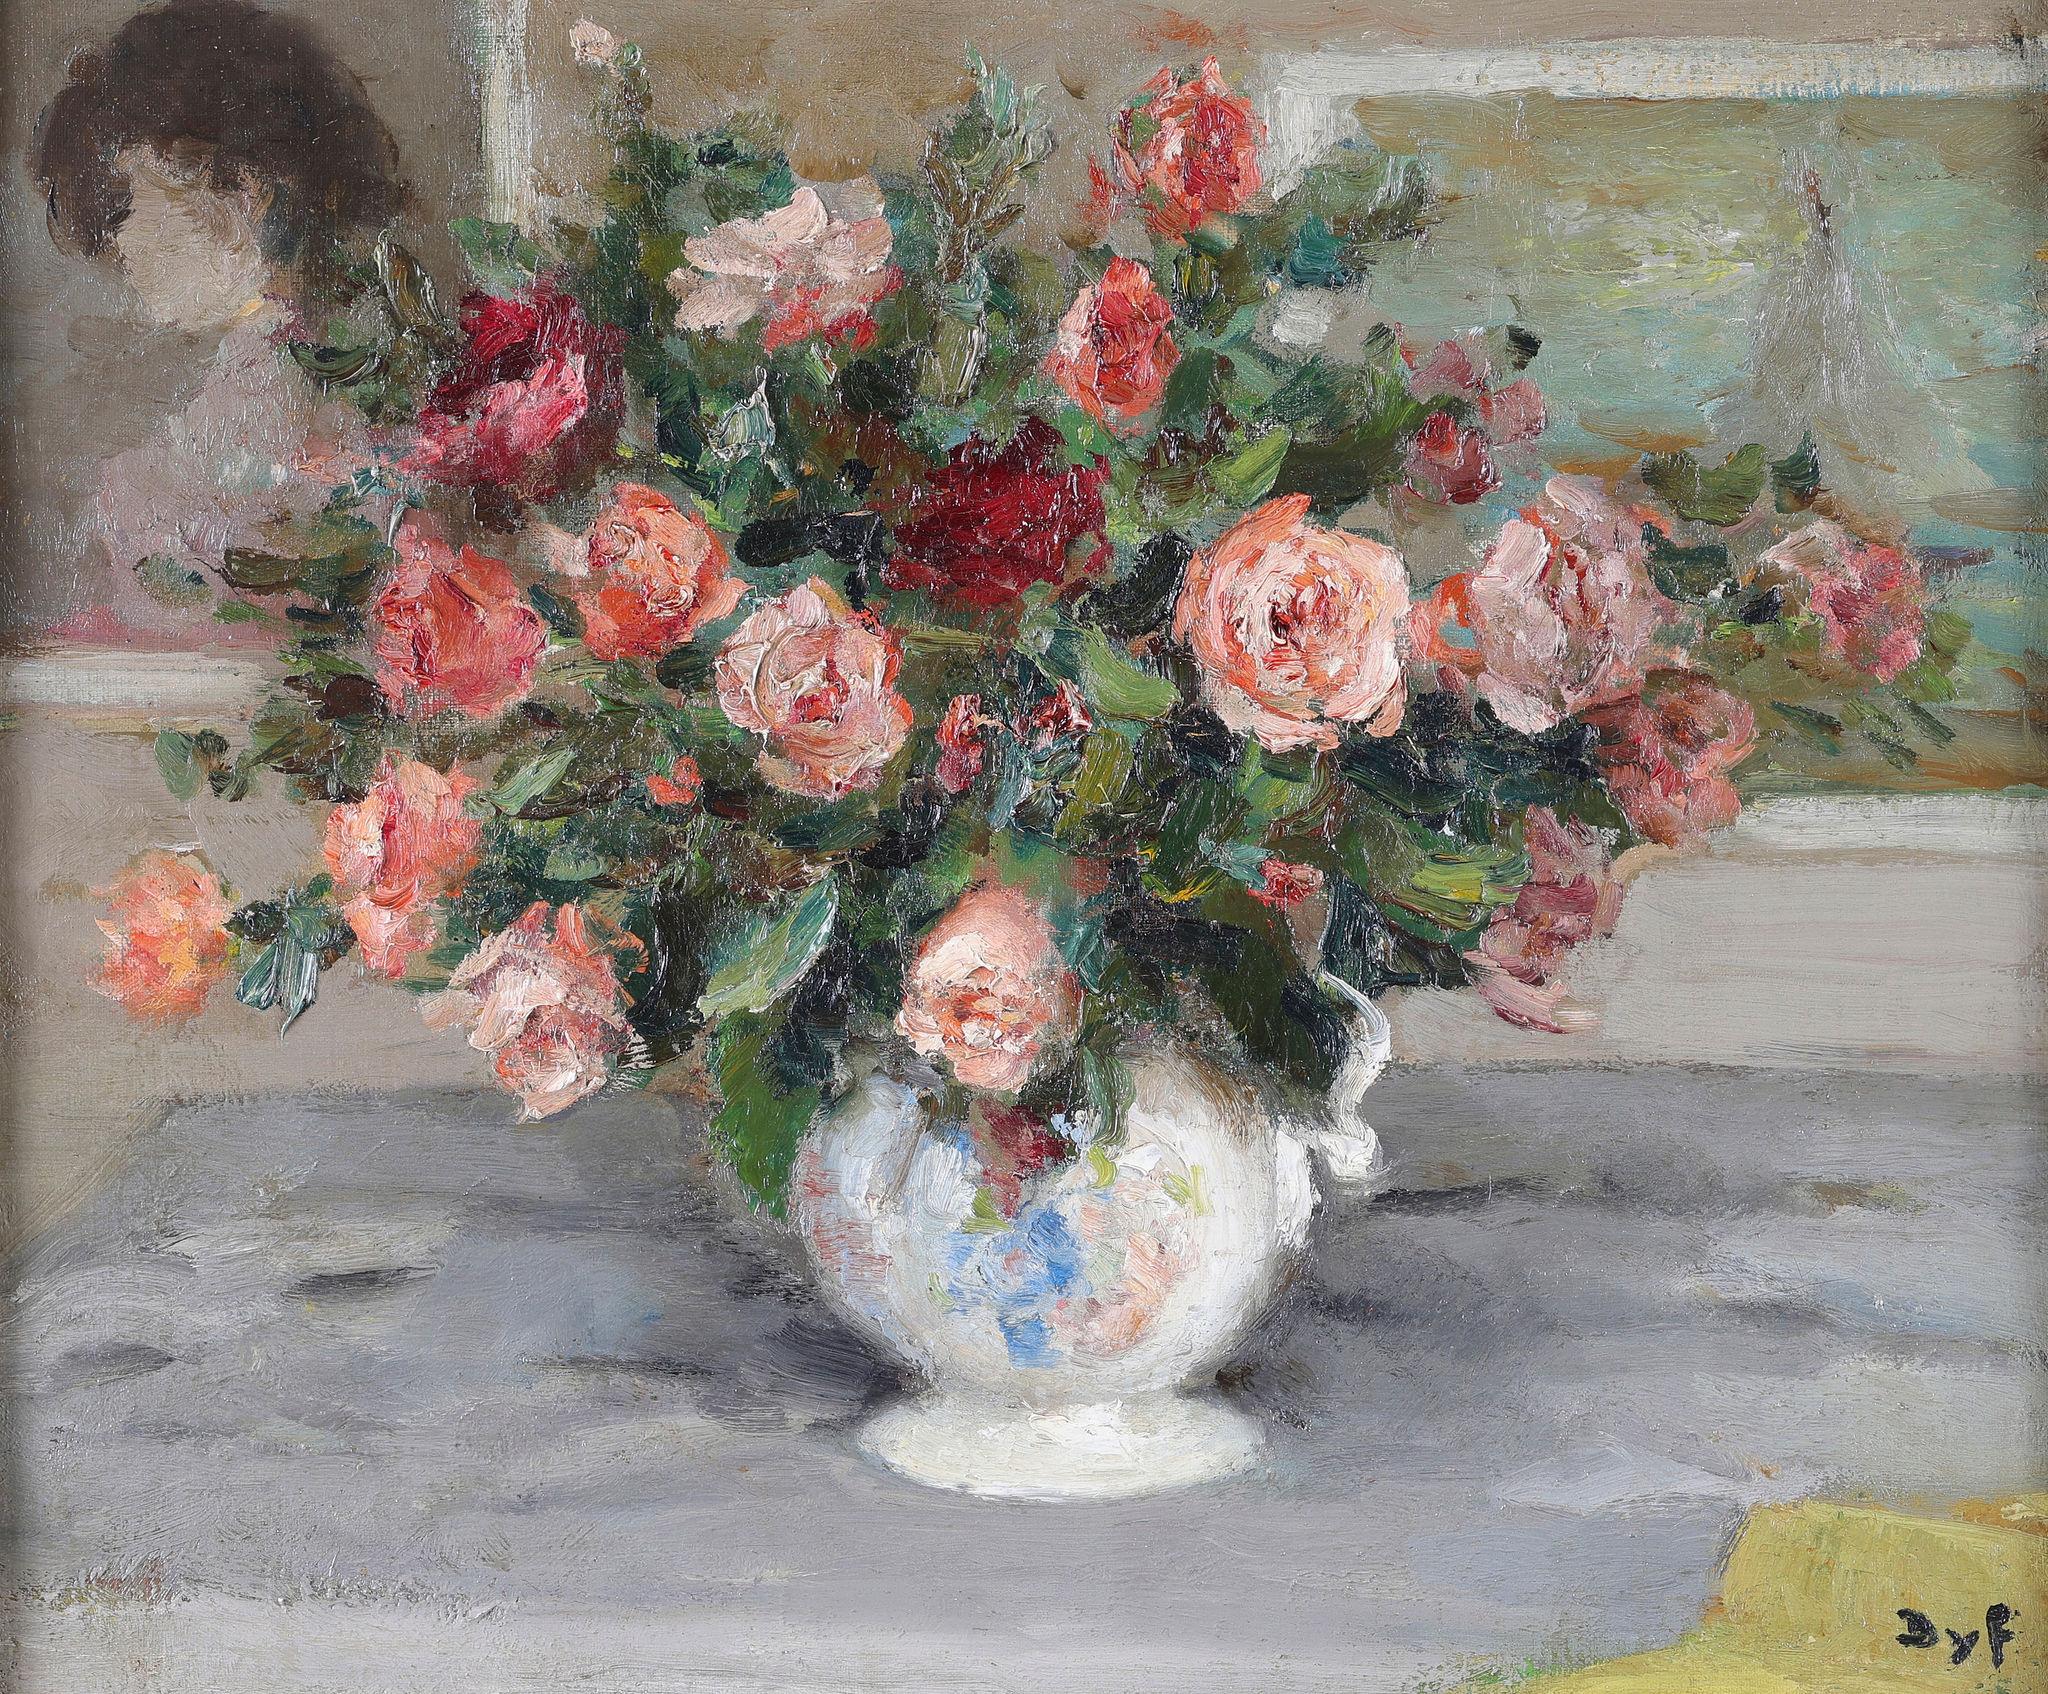 Ein Stillleben mit Rosen in einer Keramikvase. Ein Öl auf Leinwand – Painting von Marcel Dyf